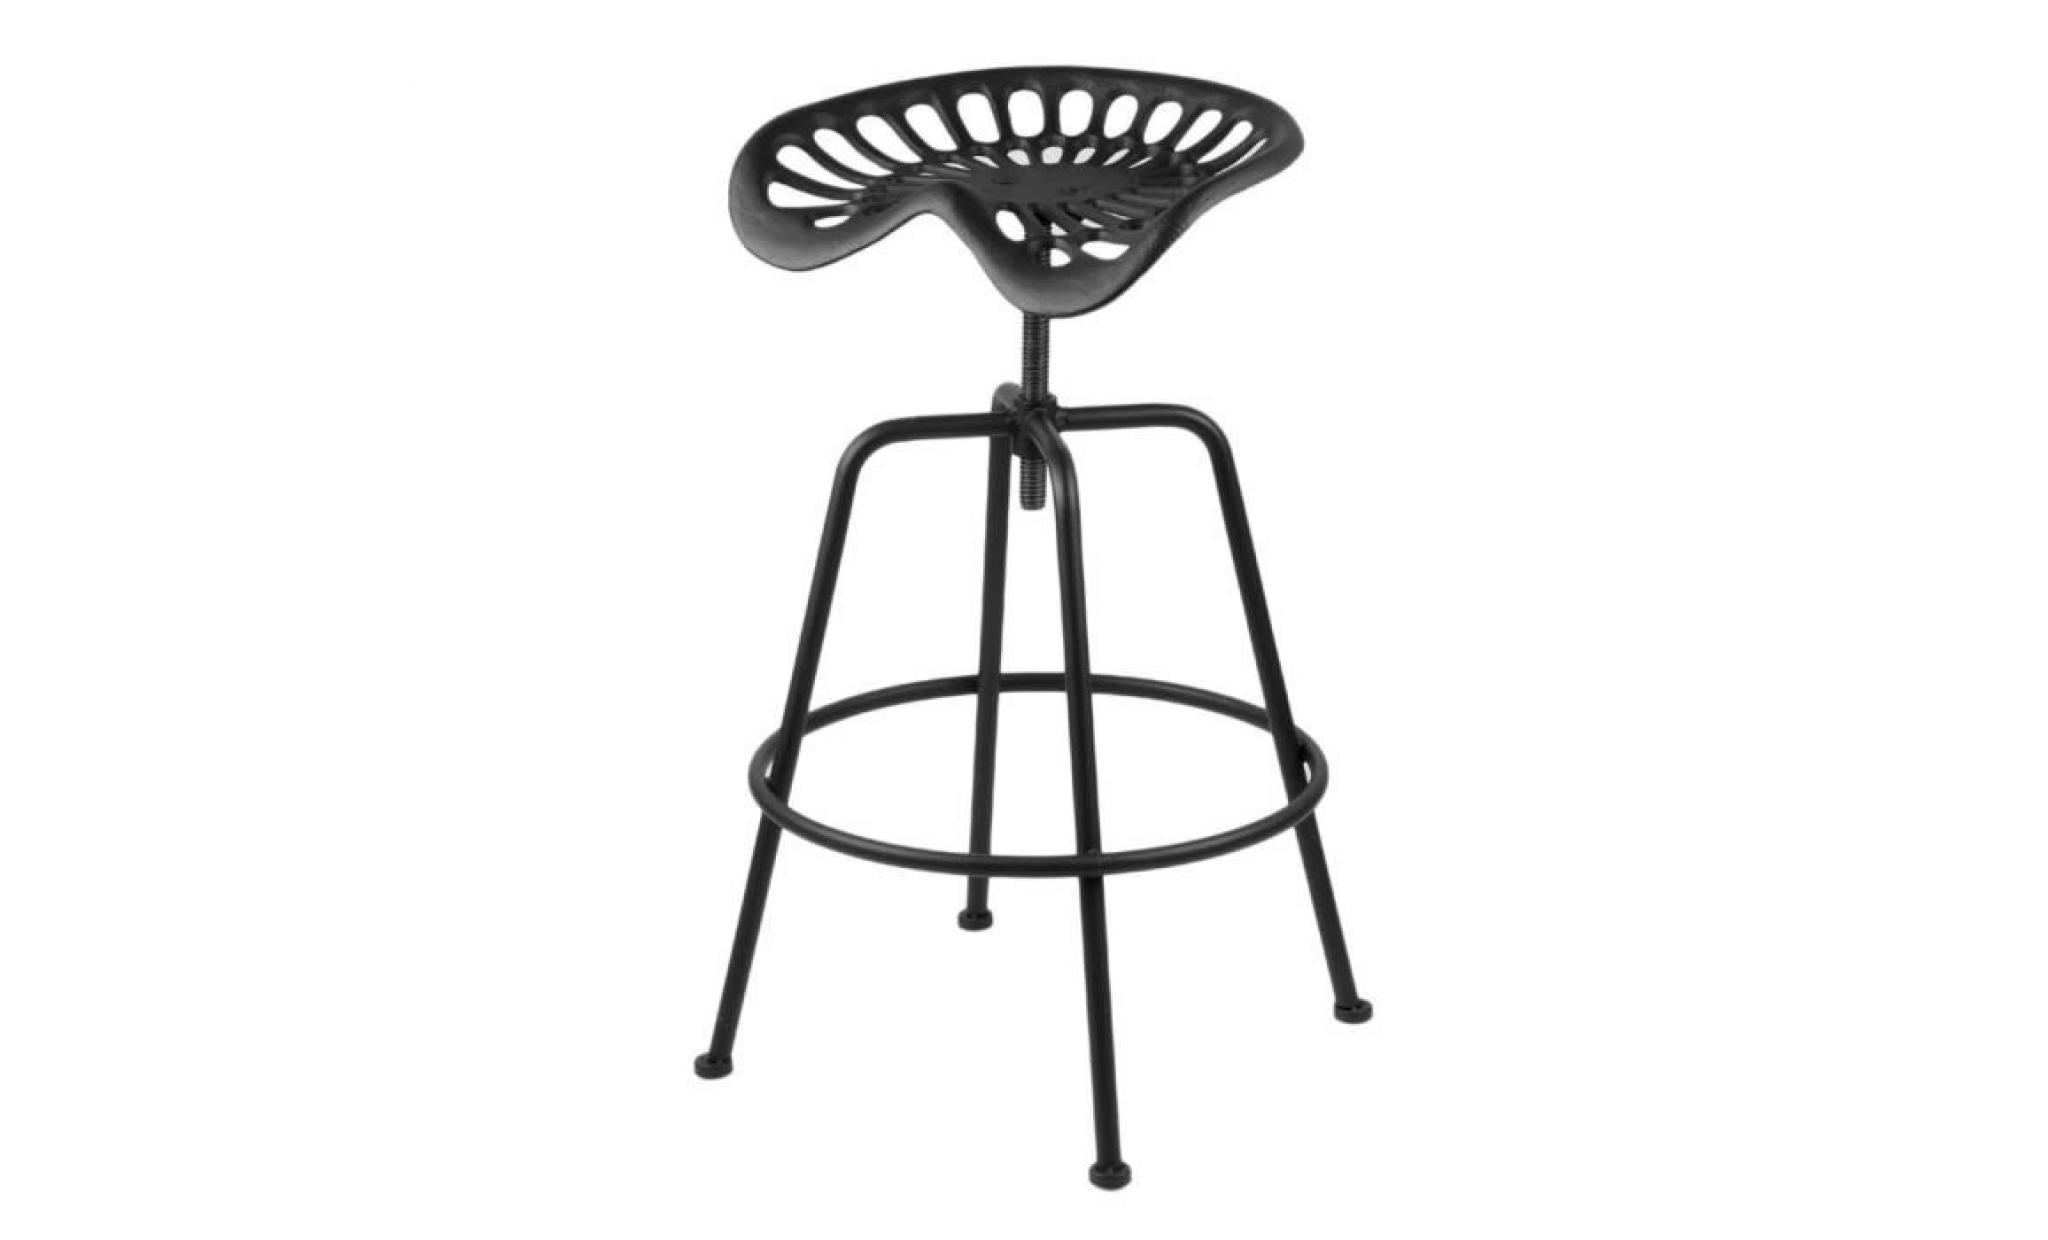 1 pcs tractor chaise tabouret en fonte hauteur réglable design industriel bar vintage